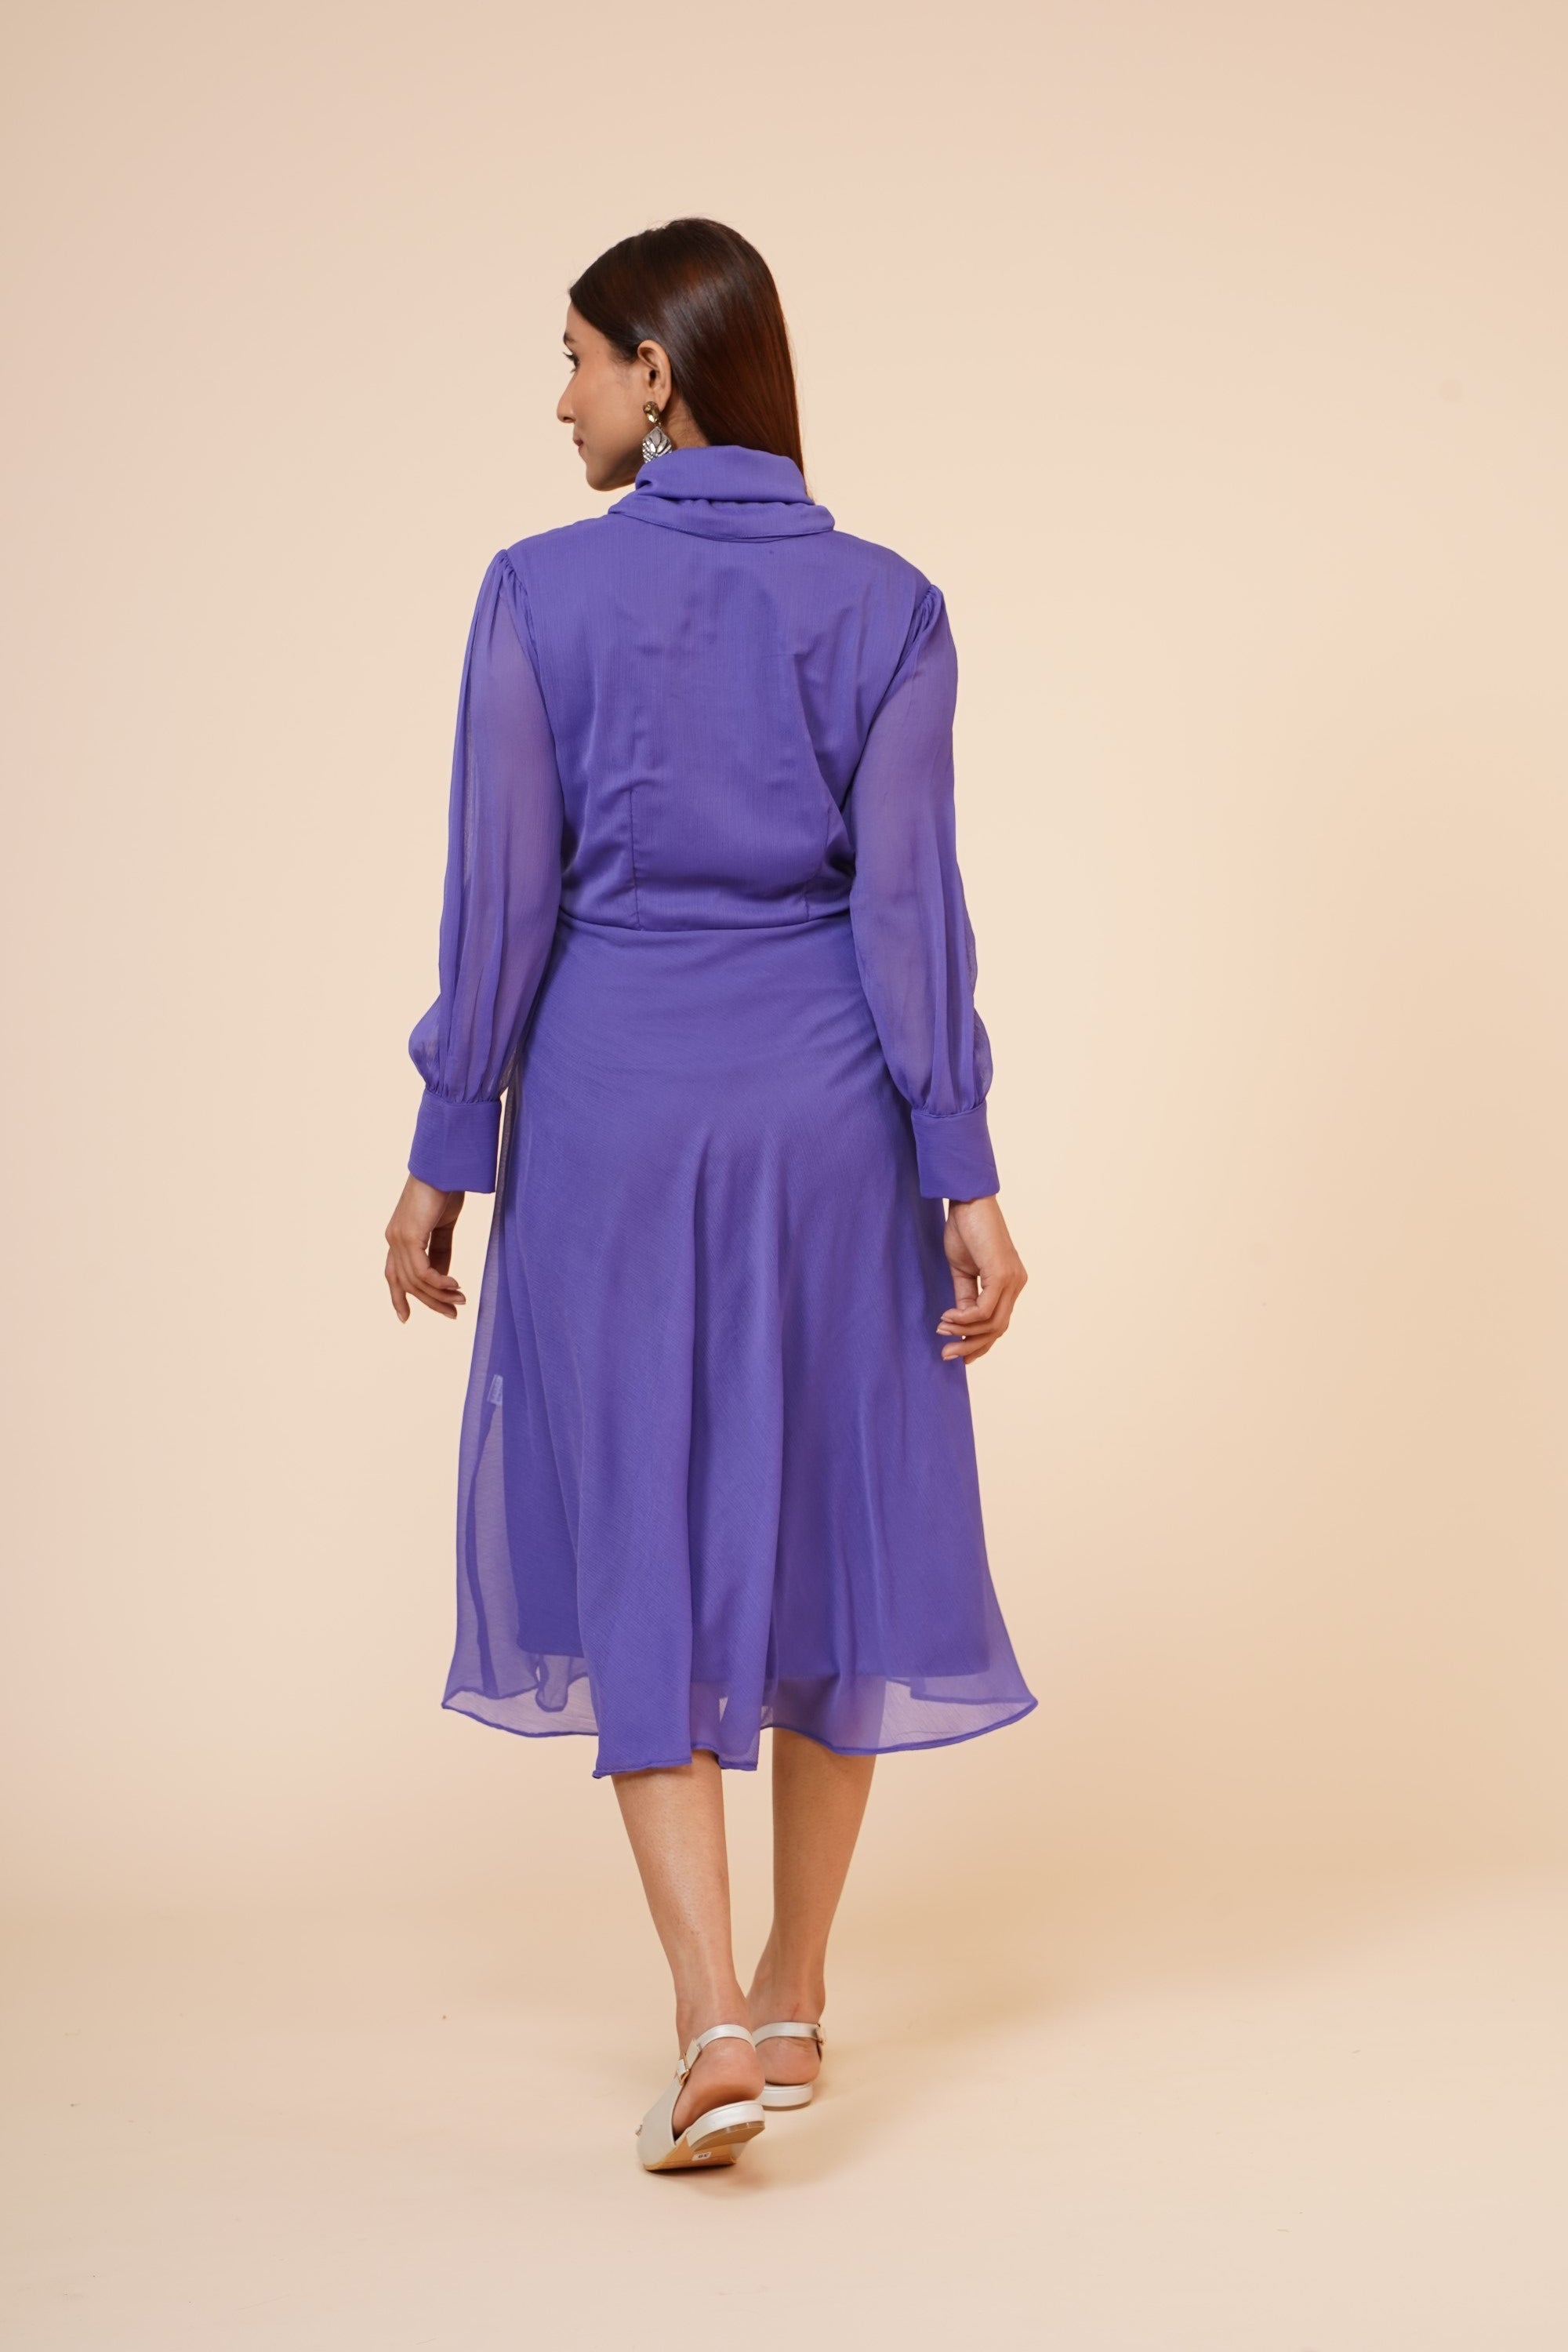 Women's Mauve Chiiffon Casual Midi Dress - MIRACOLOS by Ruchi